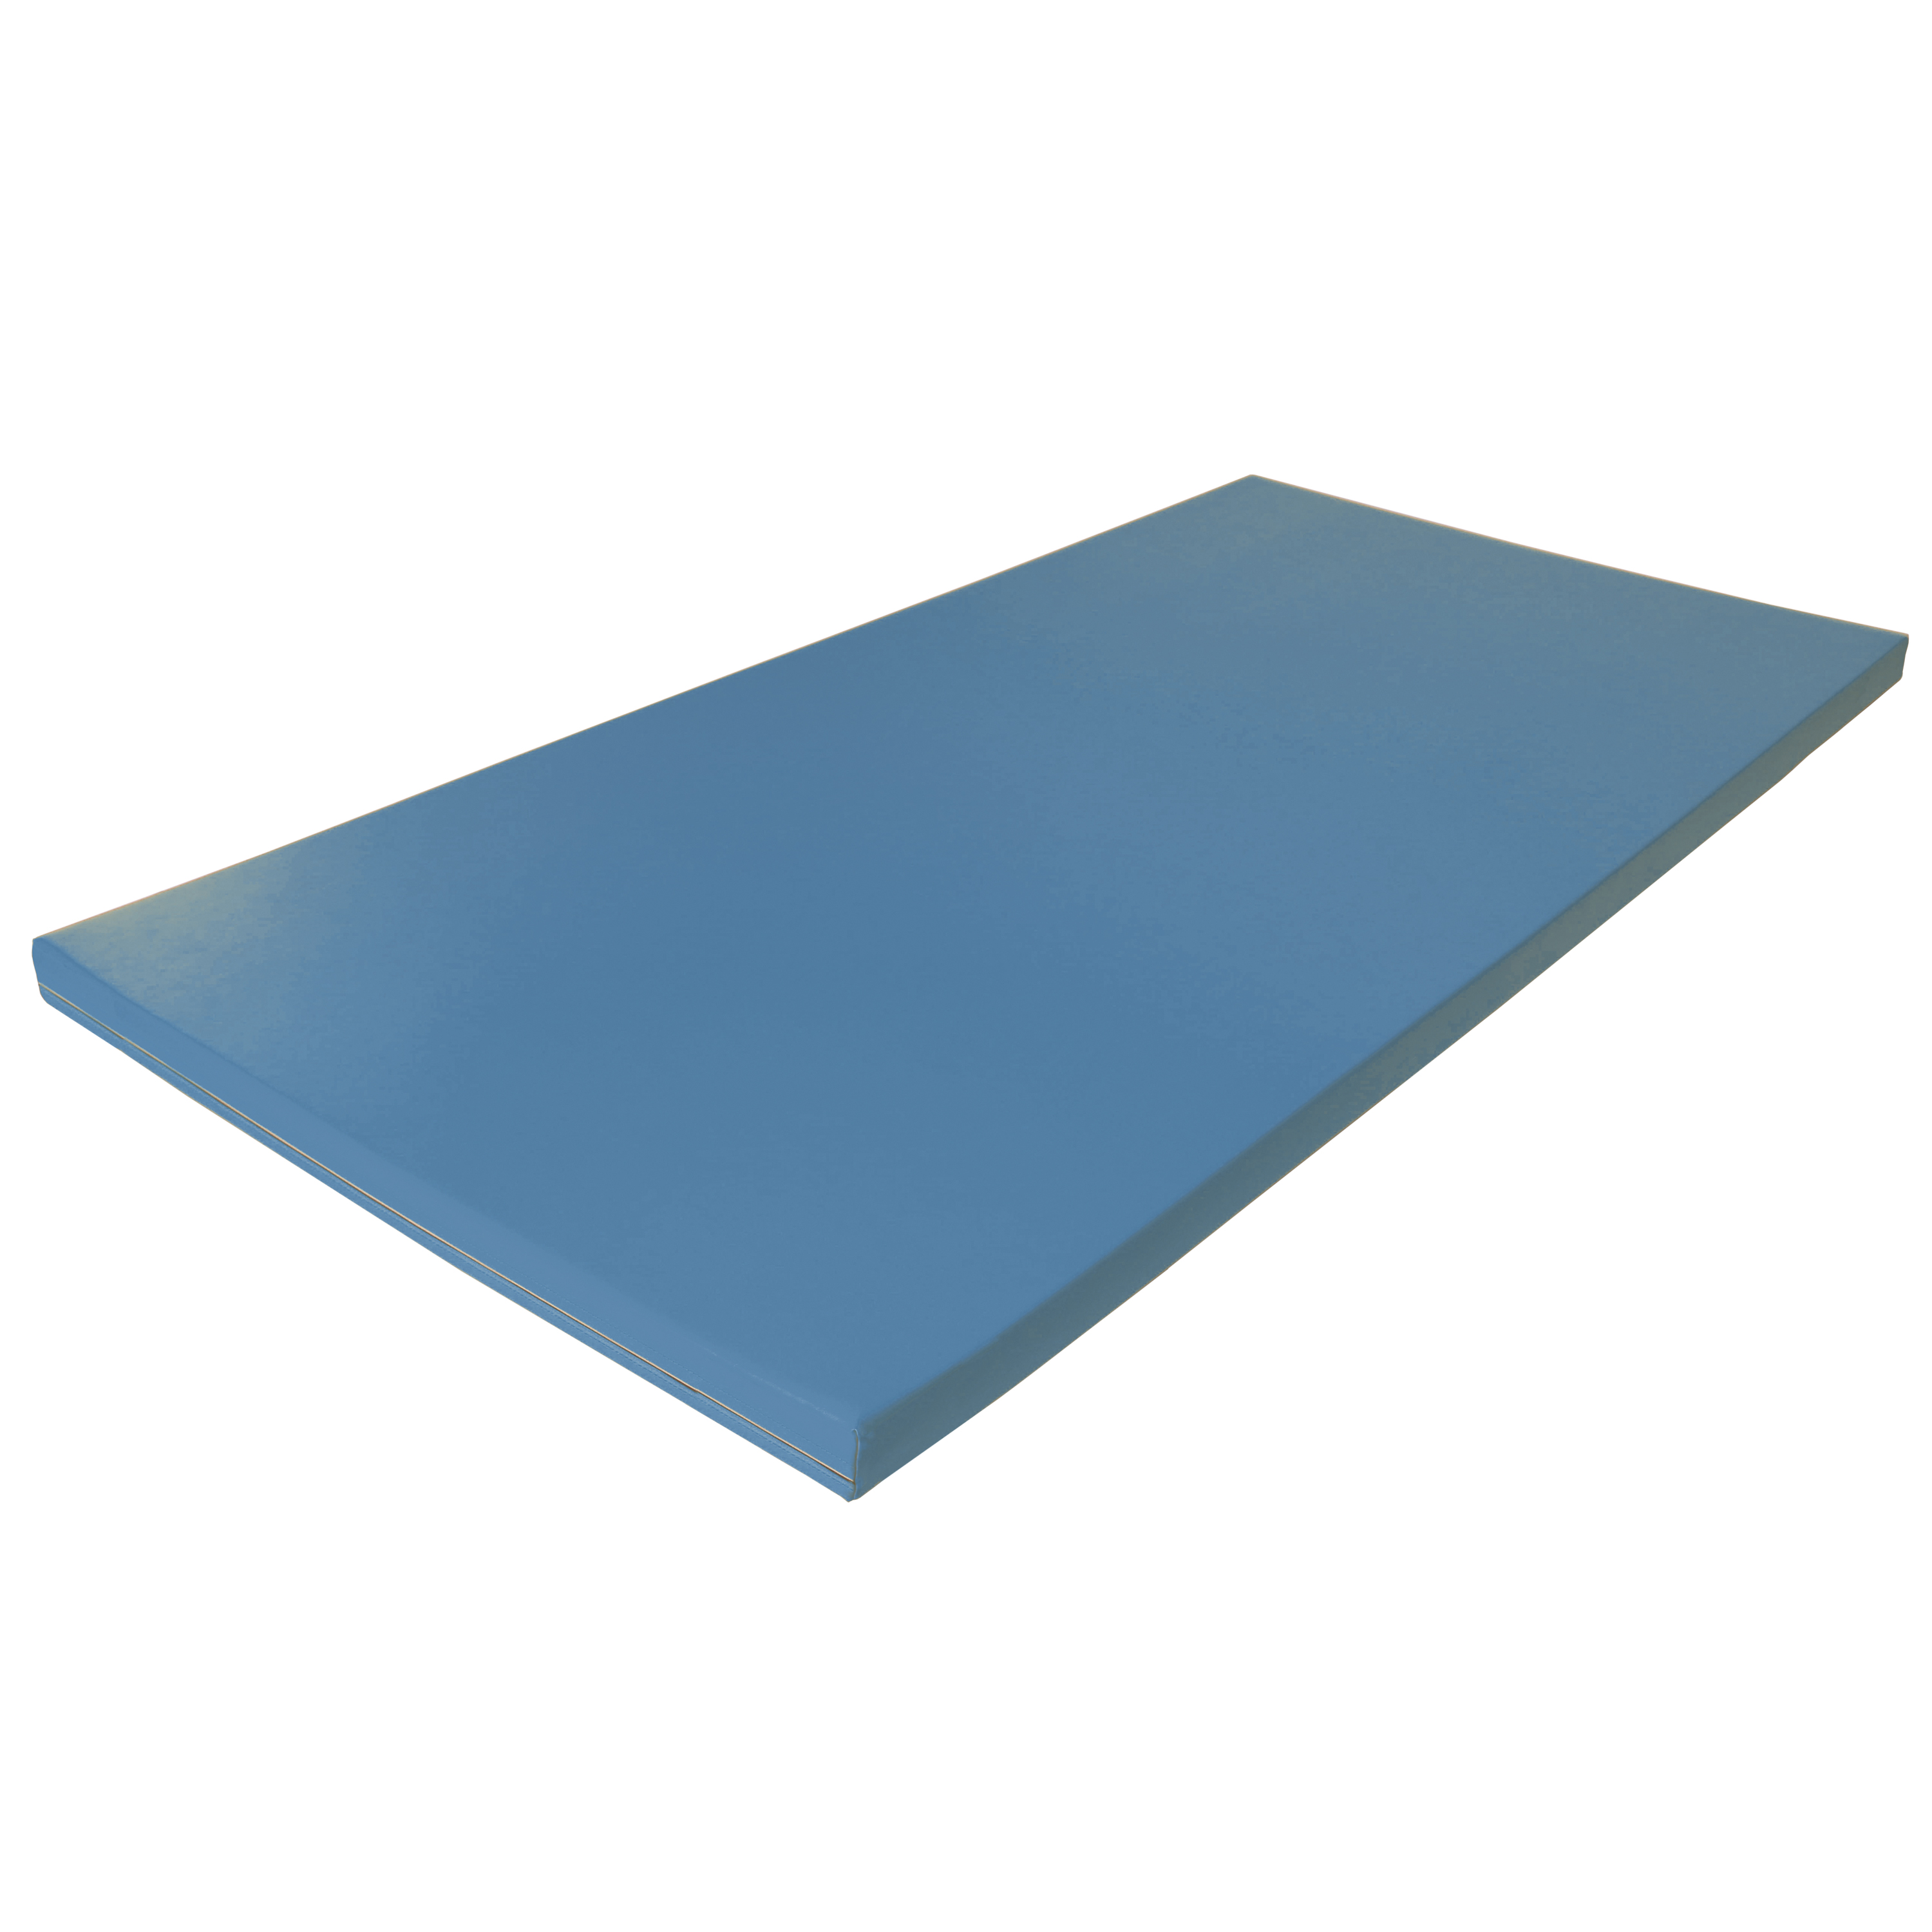 Fallschutzmatte Superleicht 'hellblau', 100 x 100 cm